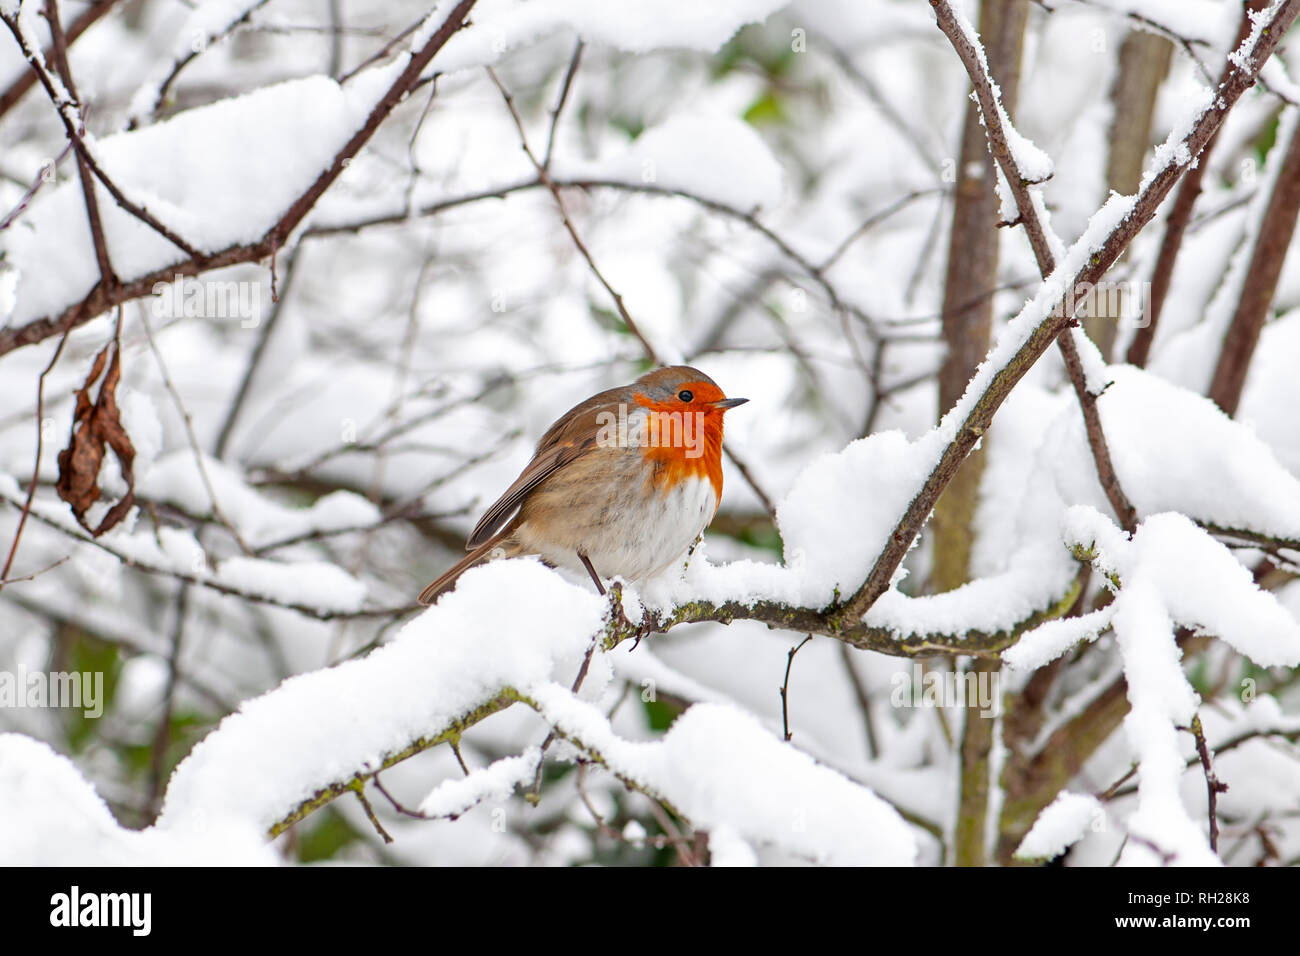 Imagen cercana de una Unión Robin mama roja encaramado en la nieve del invierno Foto de stock